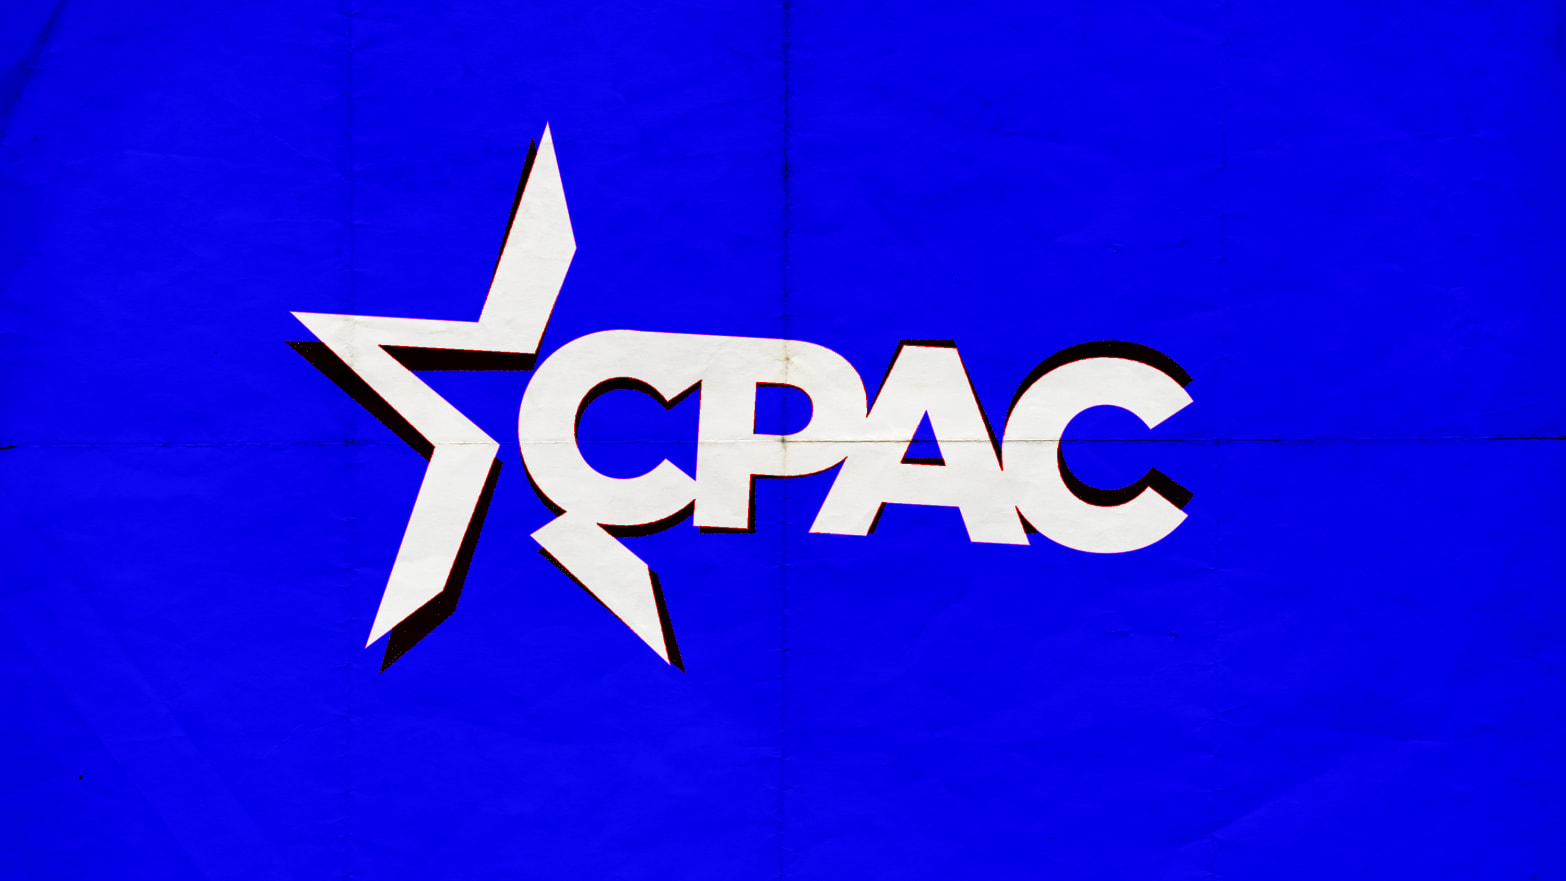 The CPAC logo